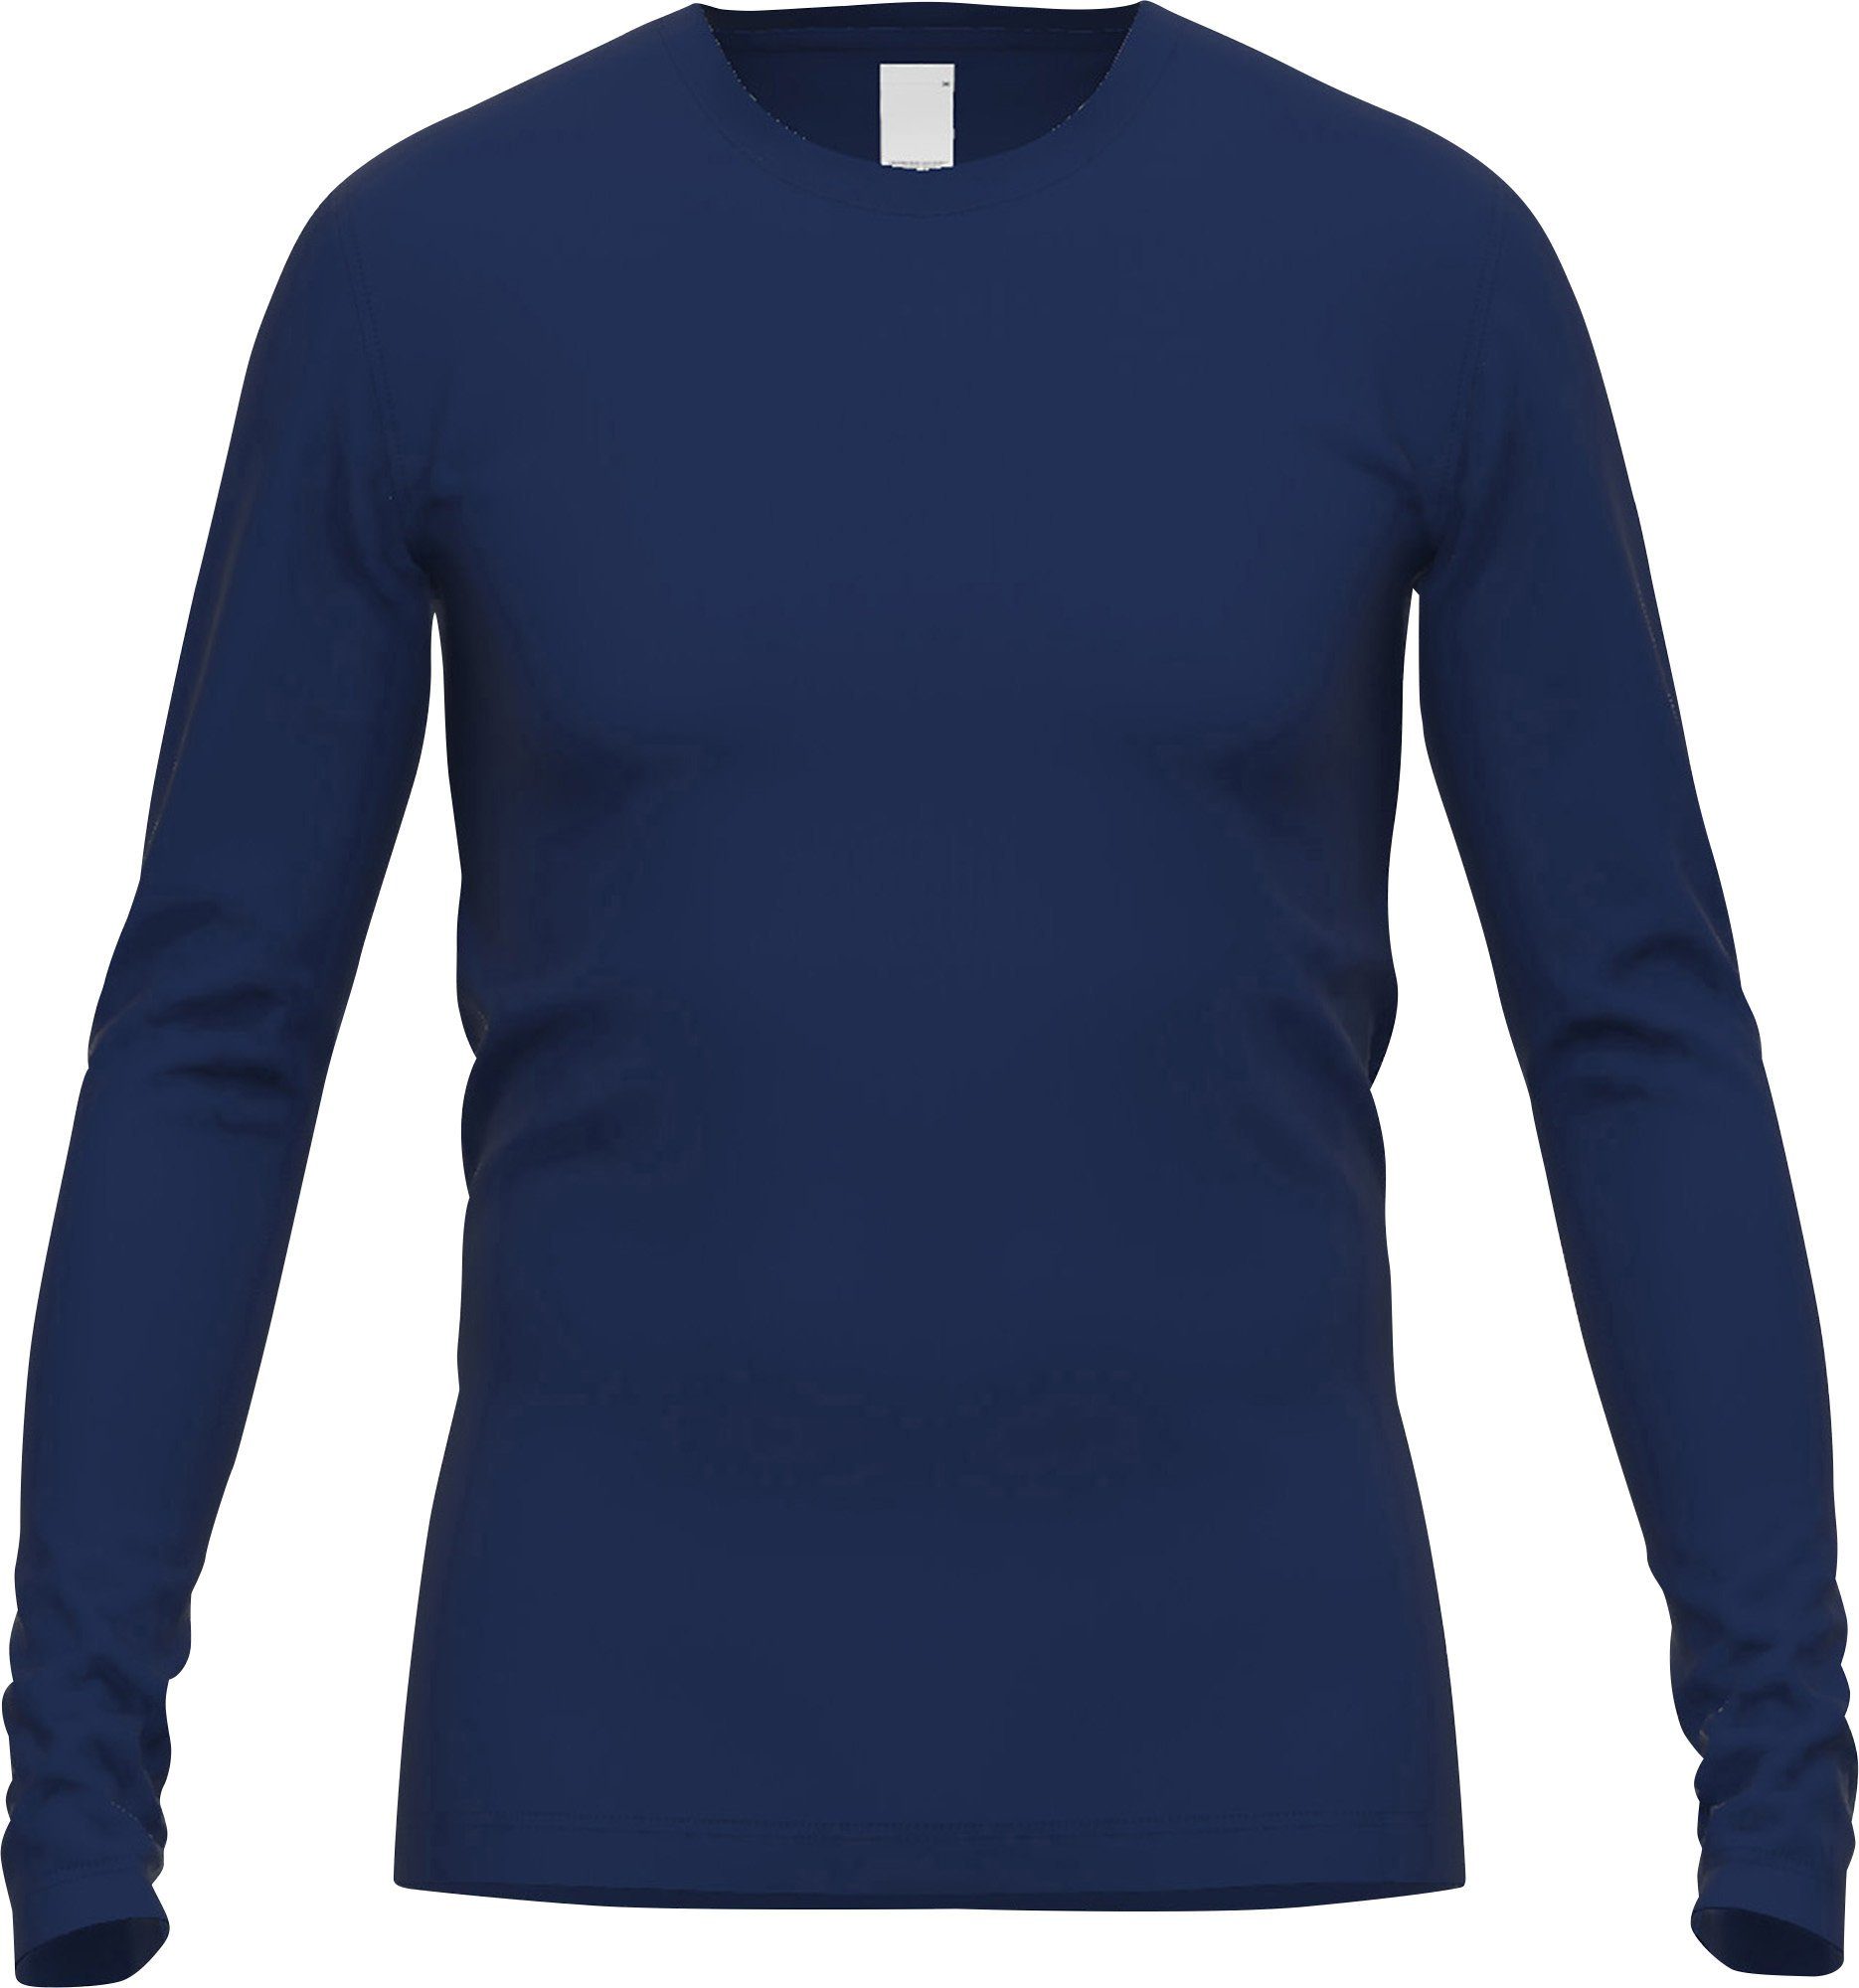 GÖTZBURG Unterhemd Herren-Thermo-Unterhemd, langarm Interlock-Jersey Uni blau-dunkel